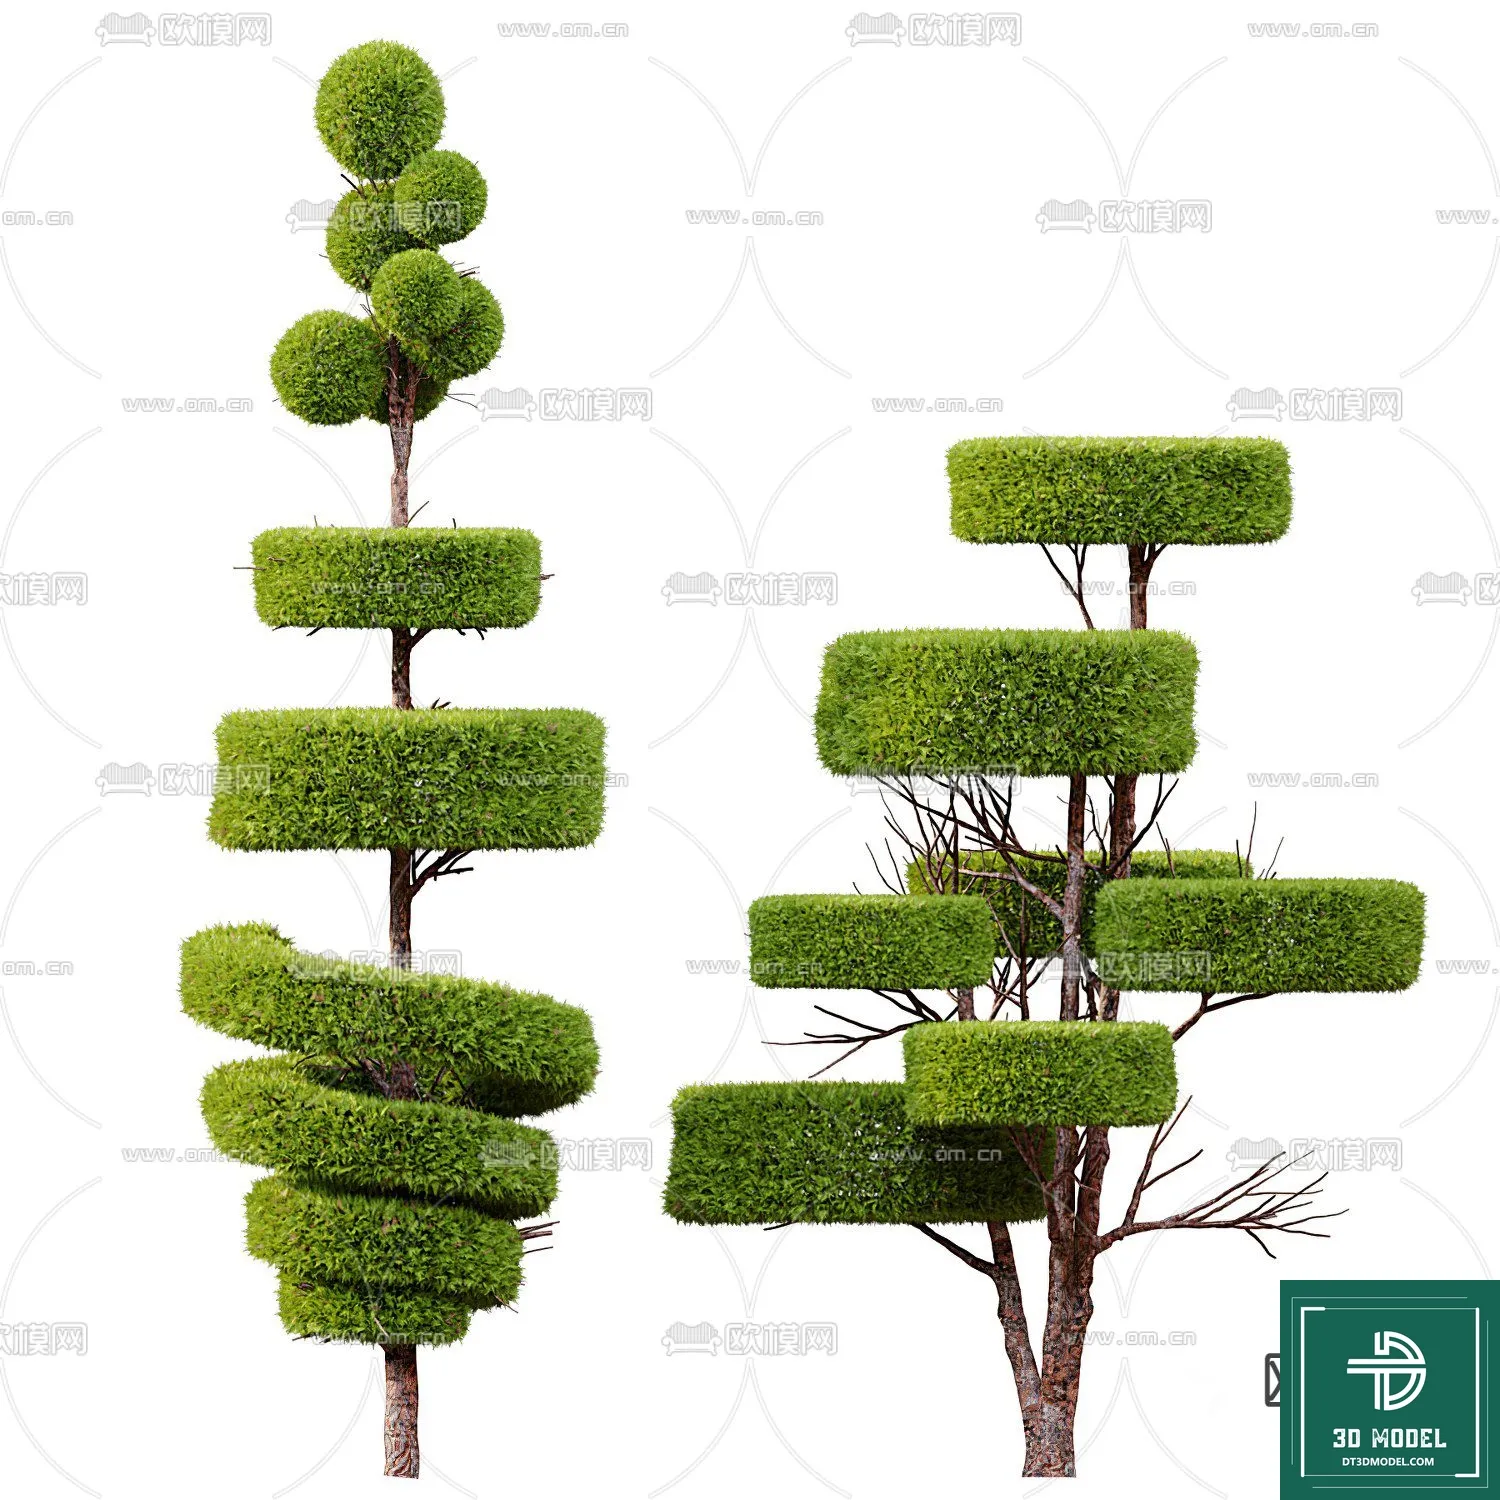 EXTERIOR – TREE – 3D MODELS – 140